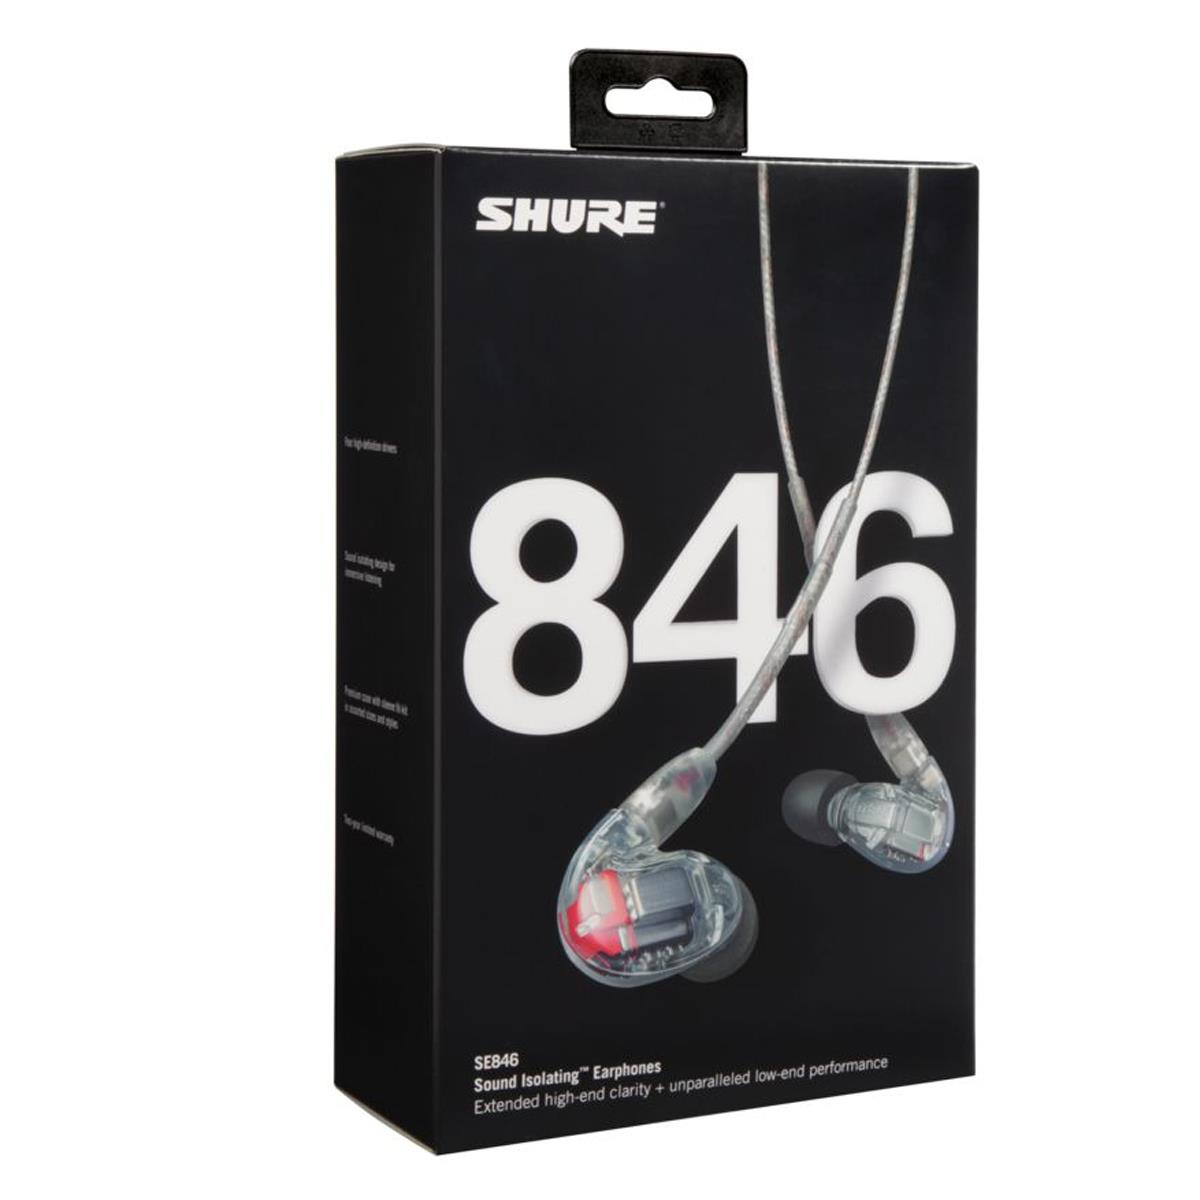 Shure SE846 In-Ear Only Headphones - Clear for sale online | eBay